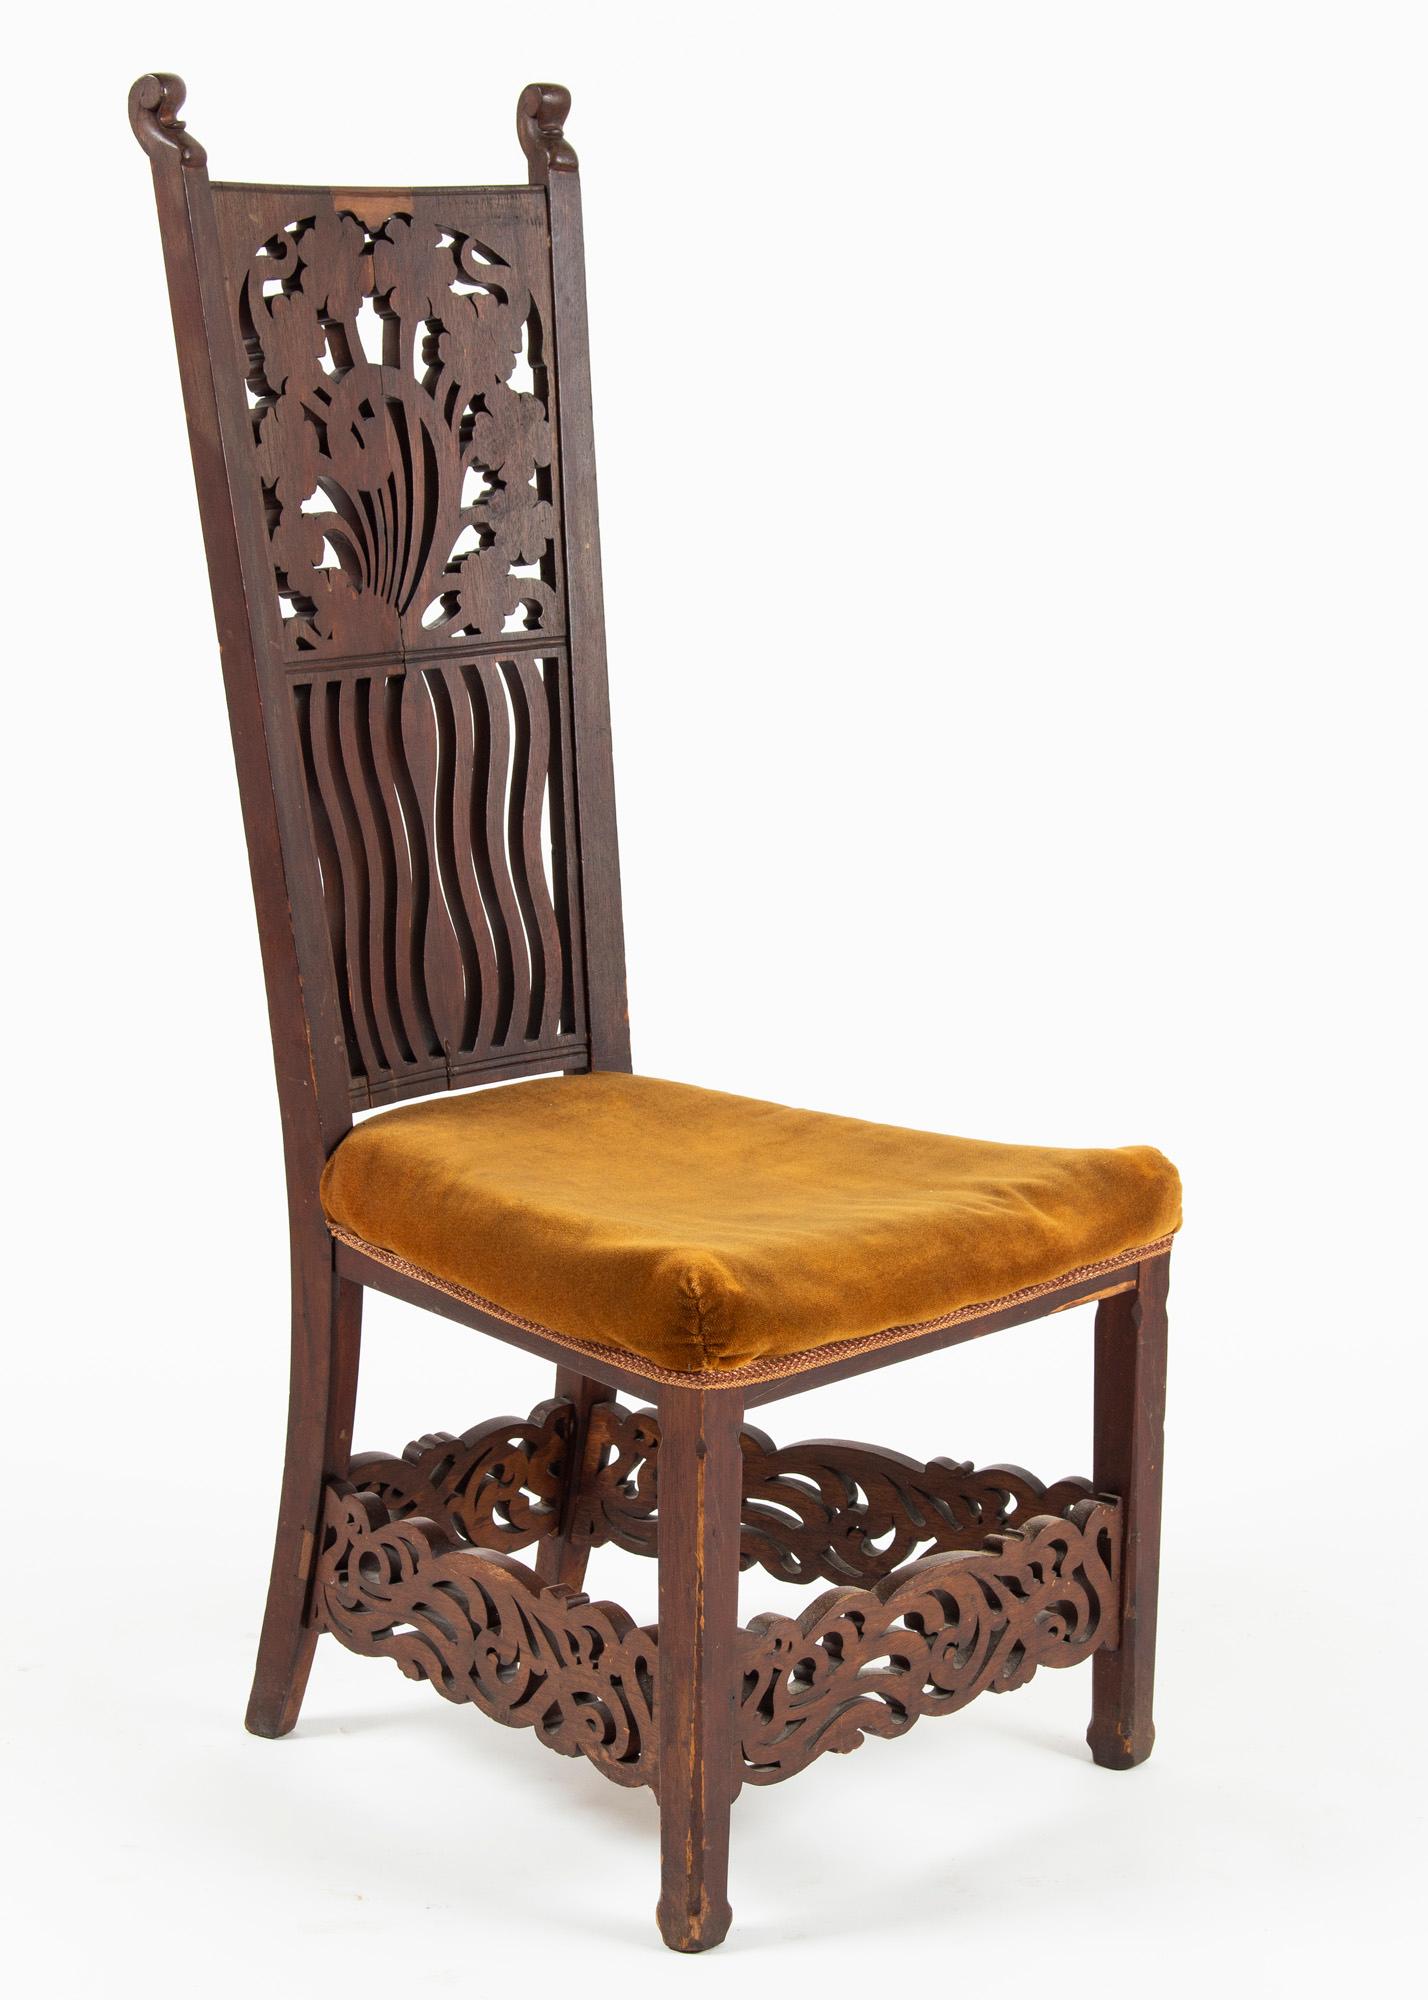 Unique Rippl-Rónai József Art Nouveau Chairs, circa 1900s For Sale 1